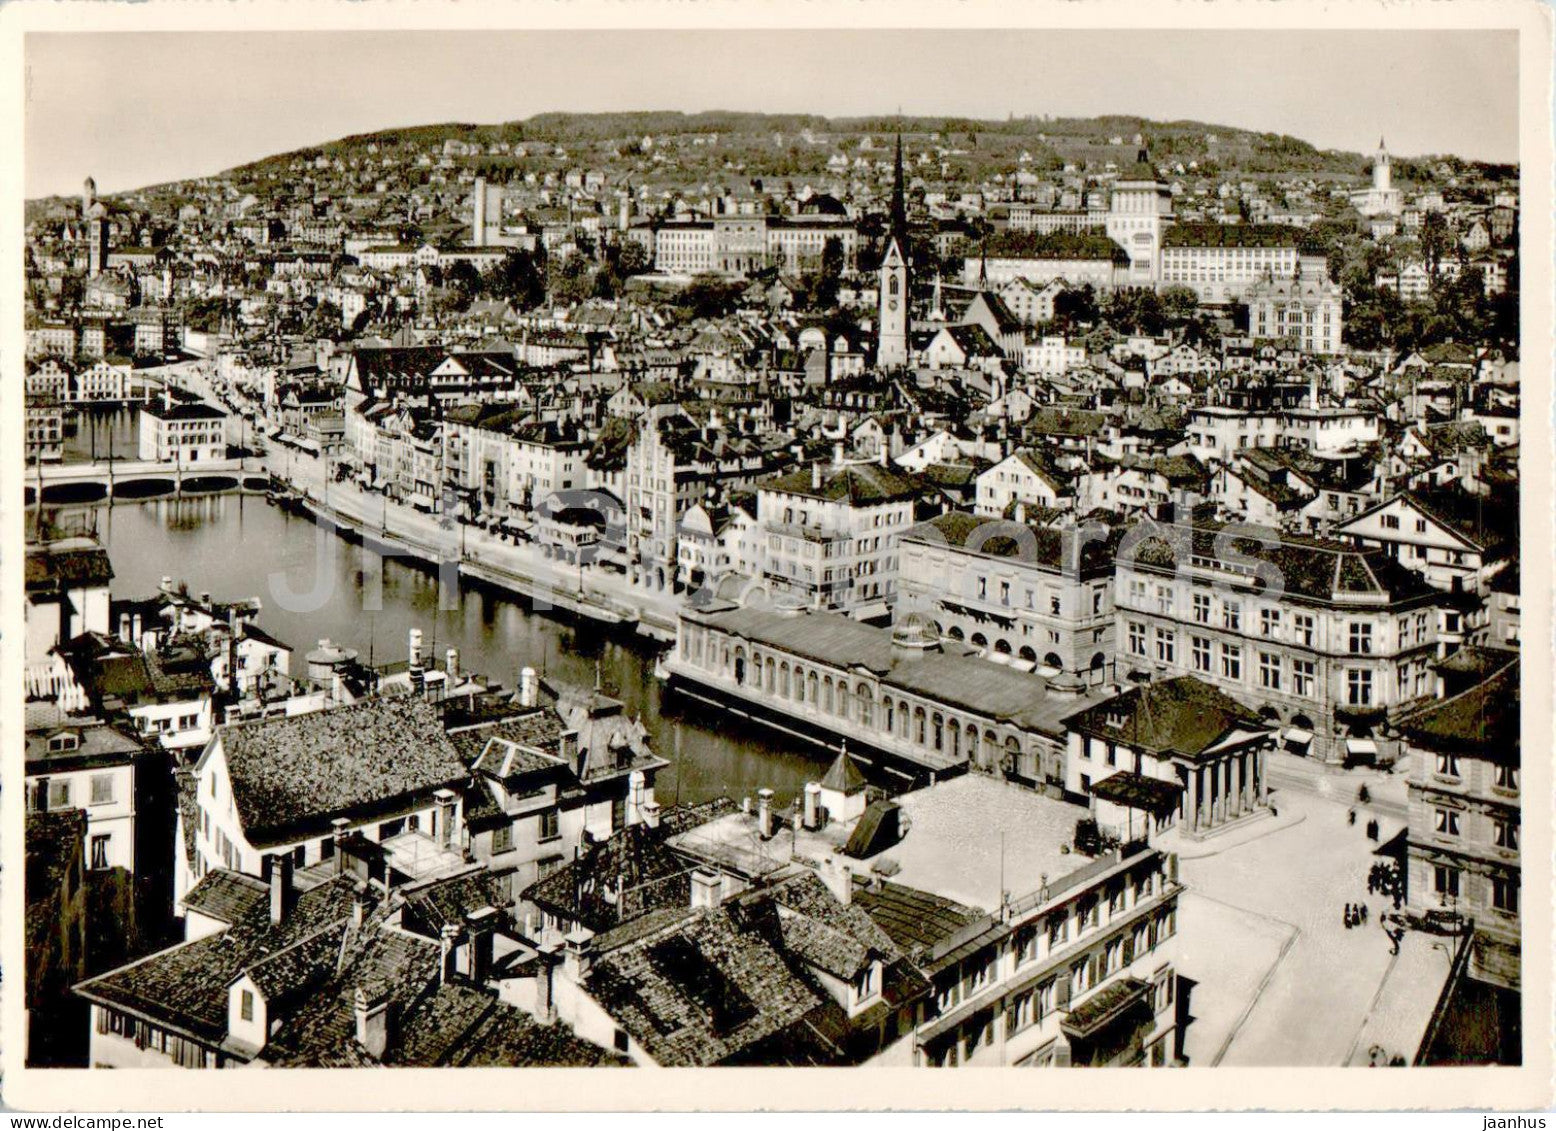 Zurich - Limmatquai mit Eidgen - Techn Hochschule u Universitat - 1768 - old postcard - Switzerland - unused - JH Postcards